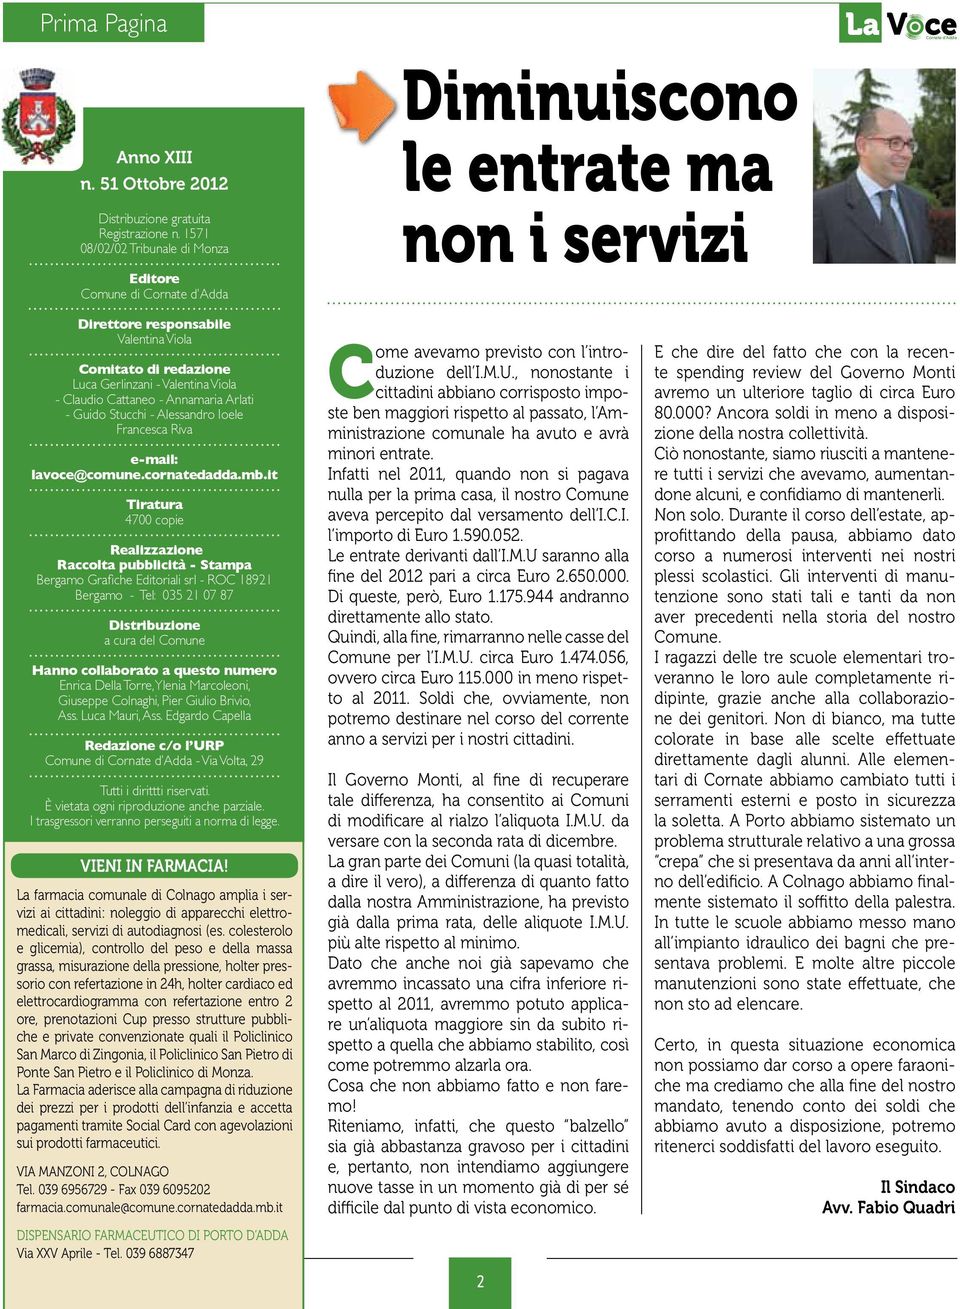 Cattaneo - Annamaria Arlati - Guido Stucchi - Alessandro Ioele Francesca Riva e-mail: lavoce@comune.cornatedadda.mb.